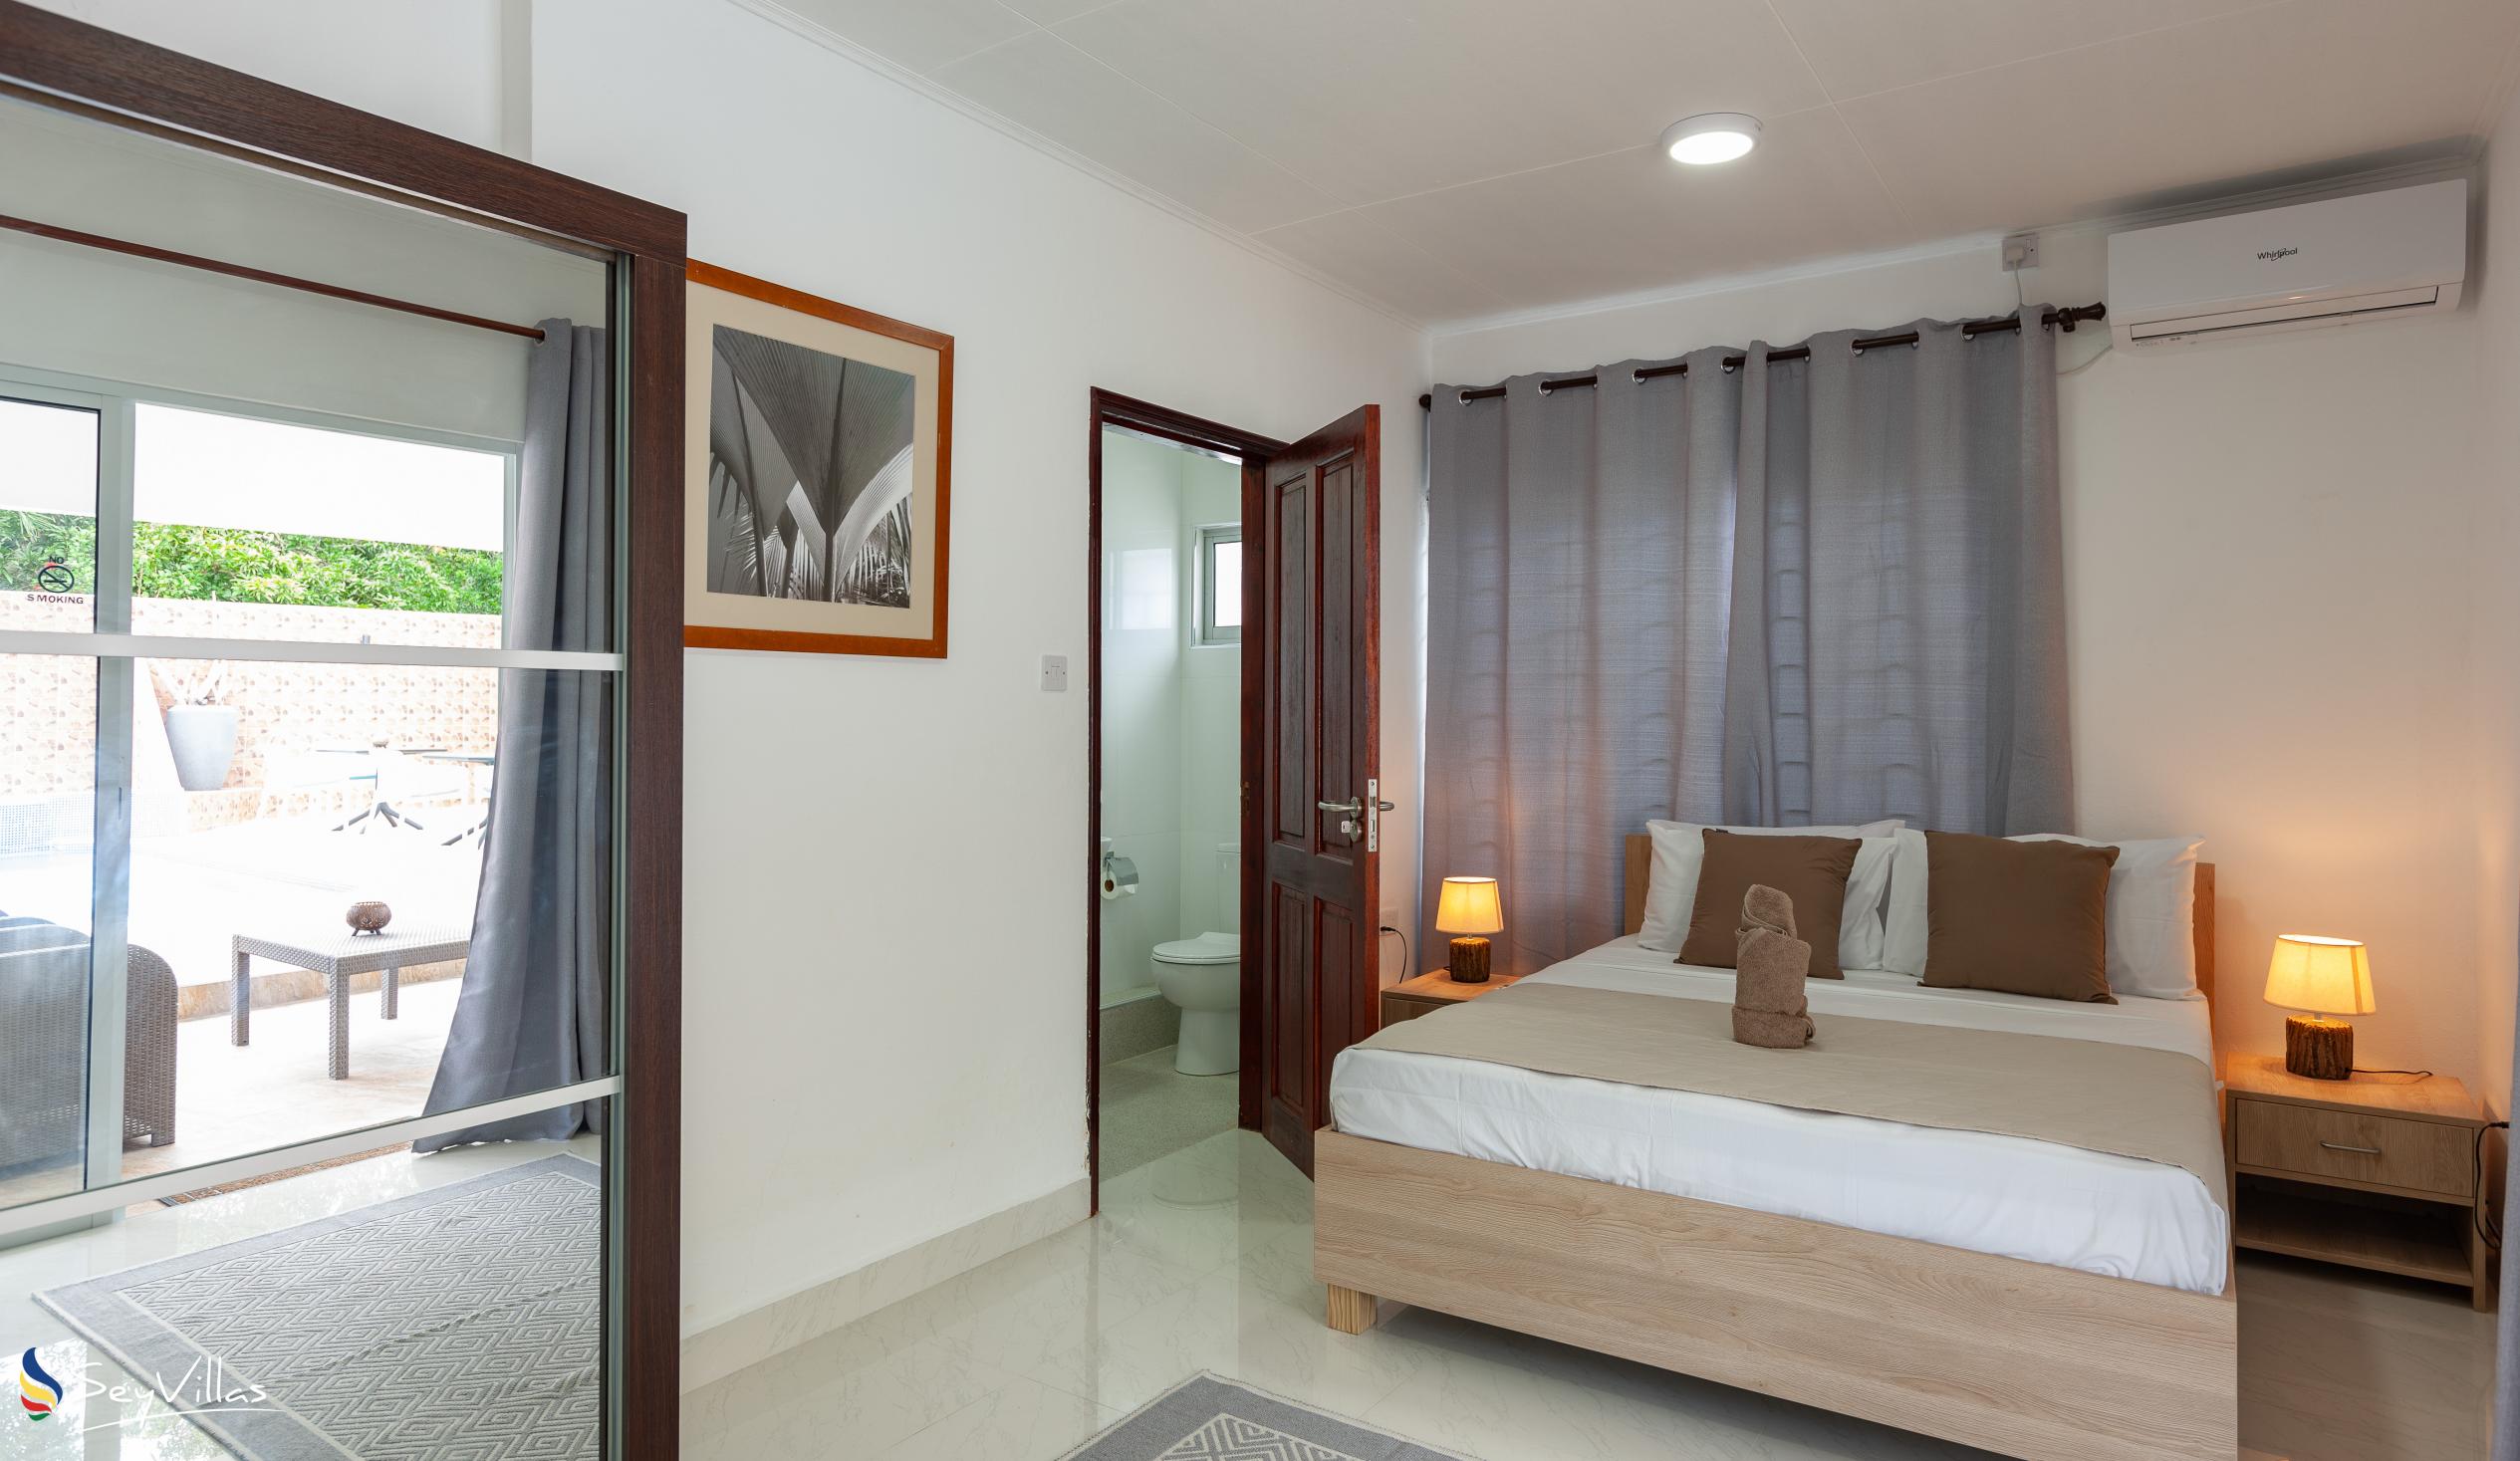 Foto 30: Hotel Plein Soleil - Deluxe Zimmer mit Queensize-Bett - Praslin (Seychellen)